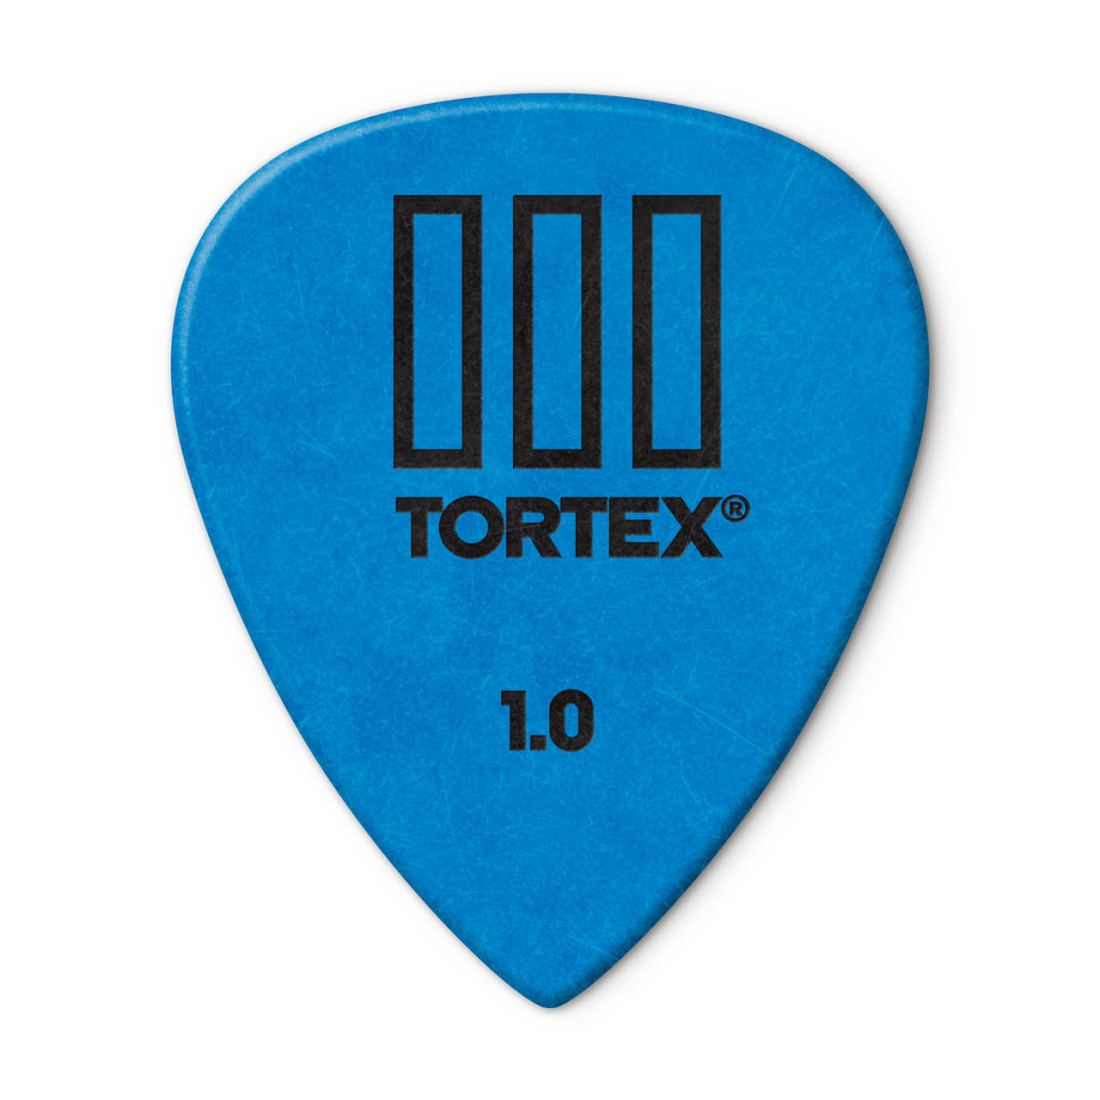 Tortex III Picks Refill (72 Pack) - 1.0mm